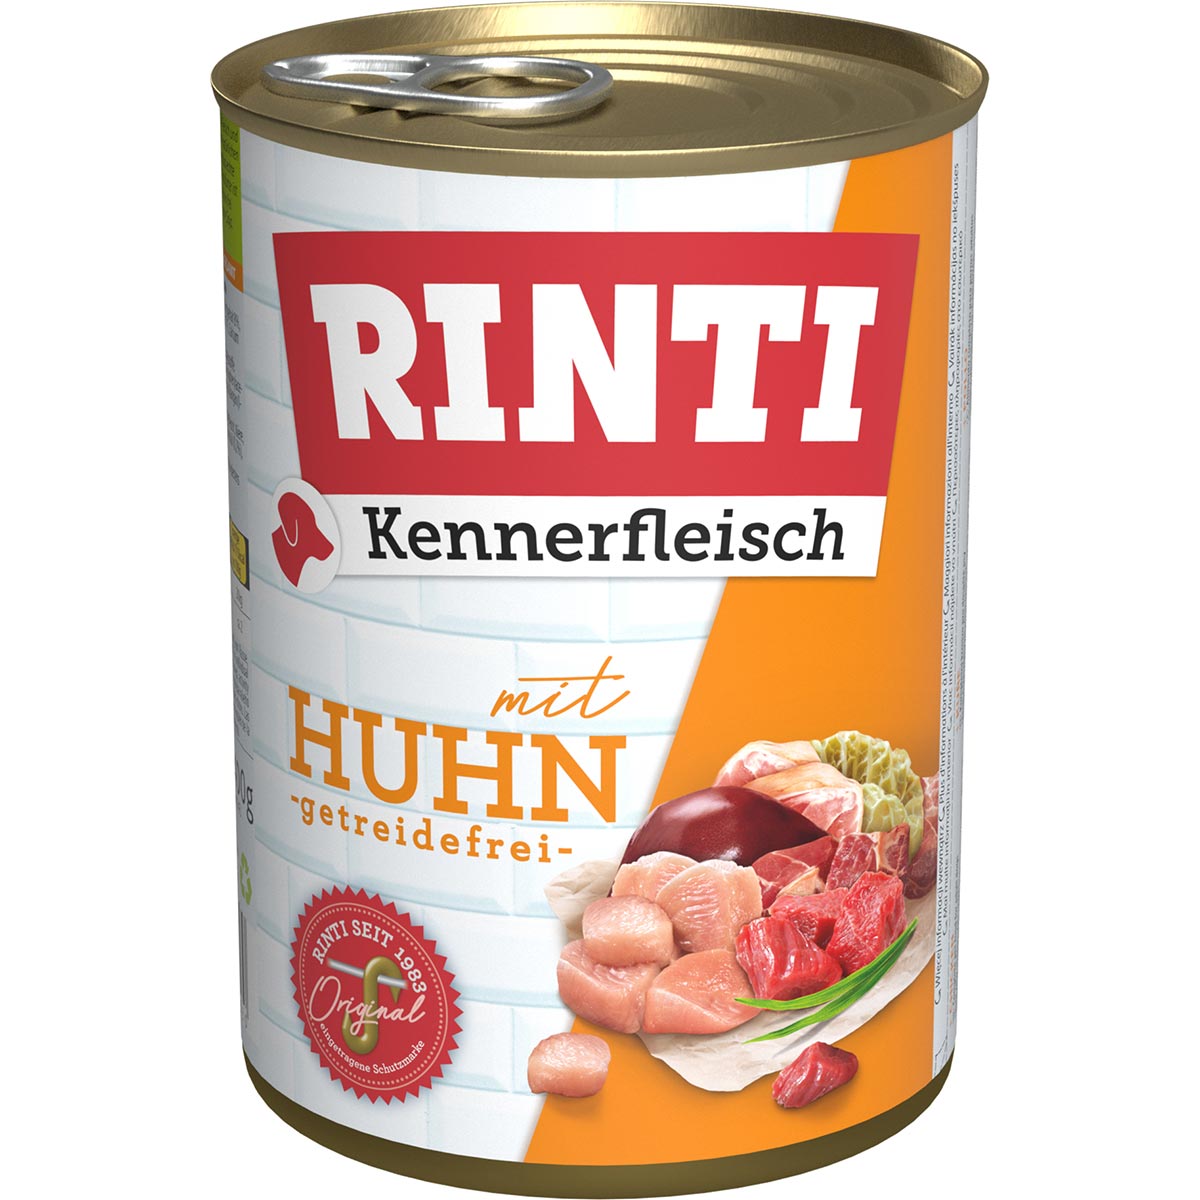 Rinti Kennerfleisch mit Huhn 24x400g von Rinti